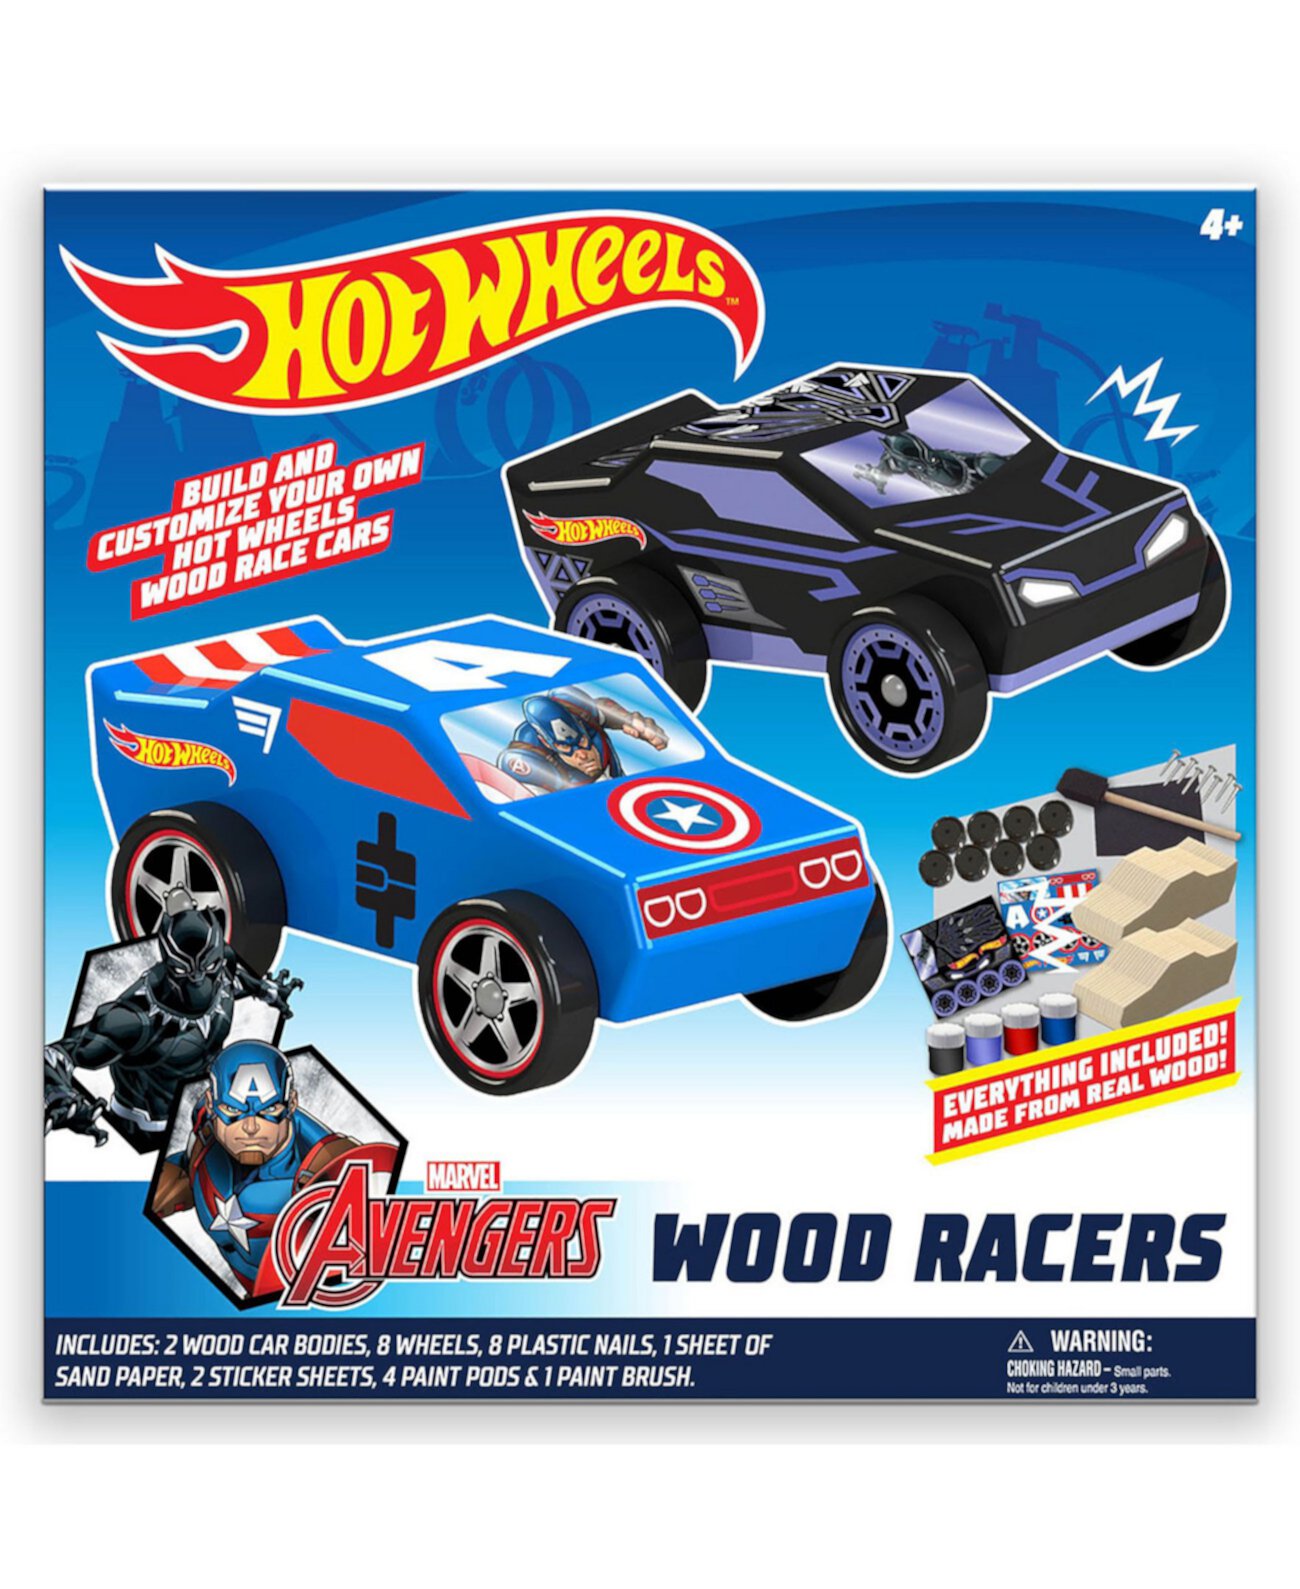 DIY Toy Wood Car Racers - 2 Pack (Marvel Avengers Черная Пантера и Капитан Америка) Hot Wheels